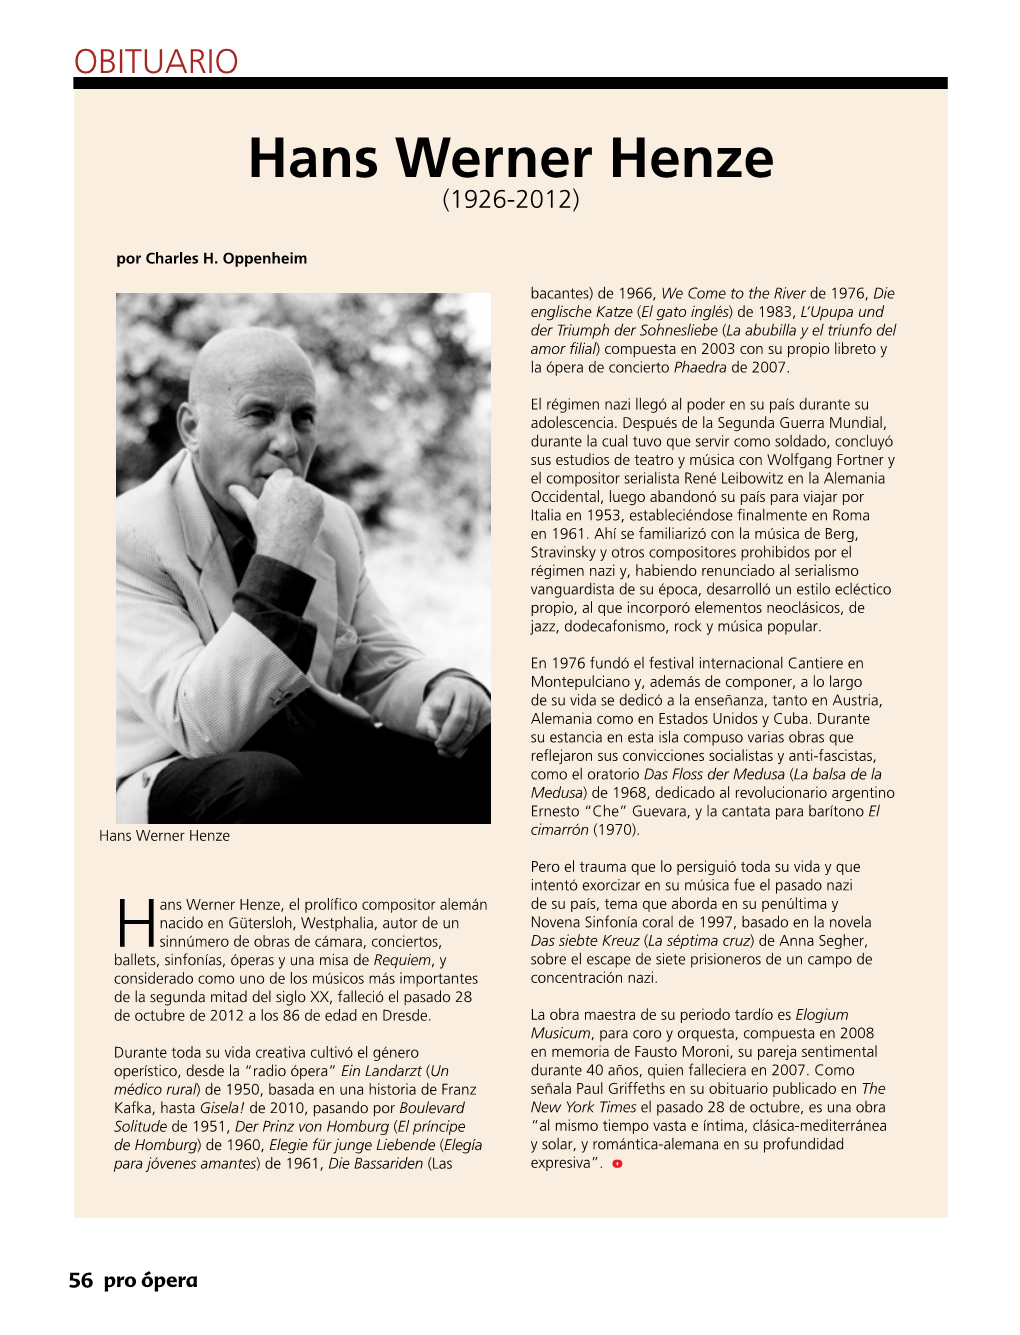 Hans Werner Henze (1926-2012)